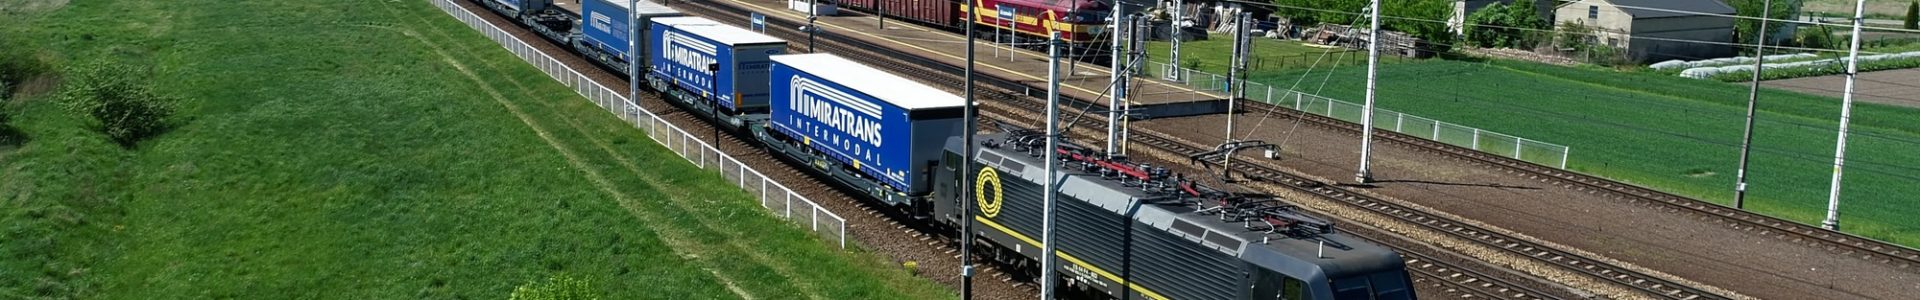 Pociąg z naczepami Miratrans Intermodal jadący po torach. W tle widać Multimodal Terminal Miratrans.